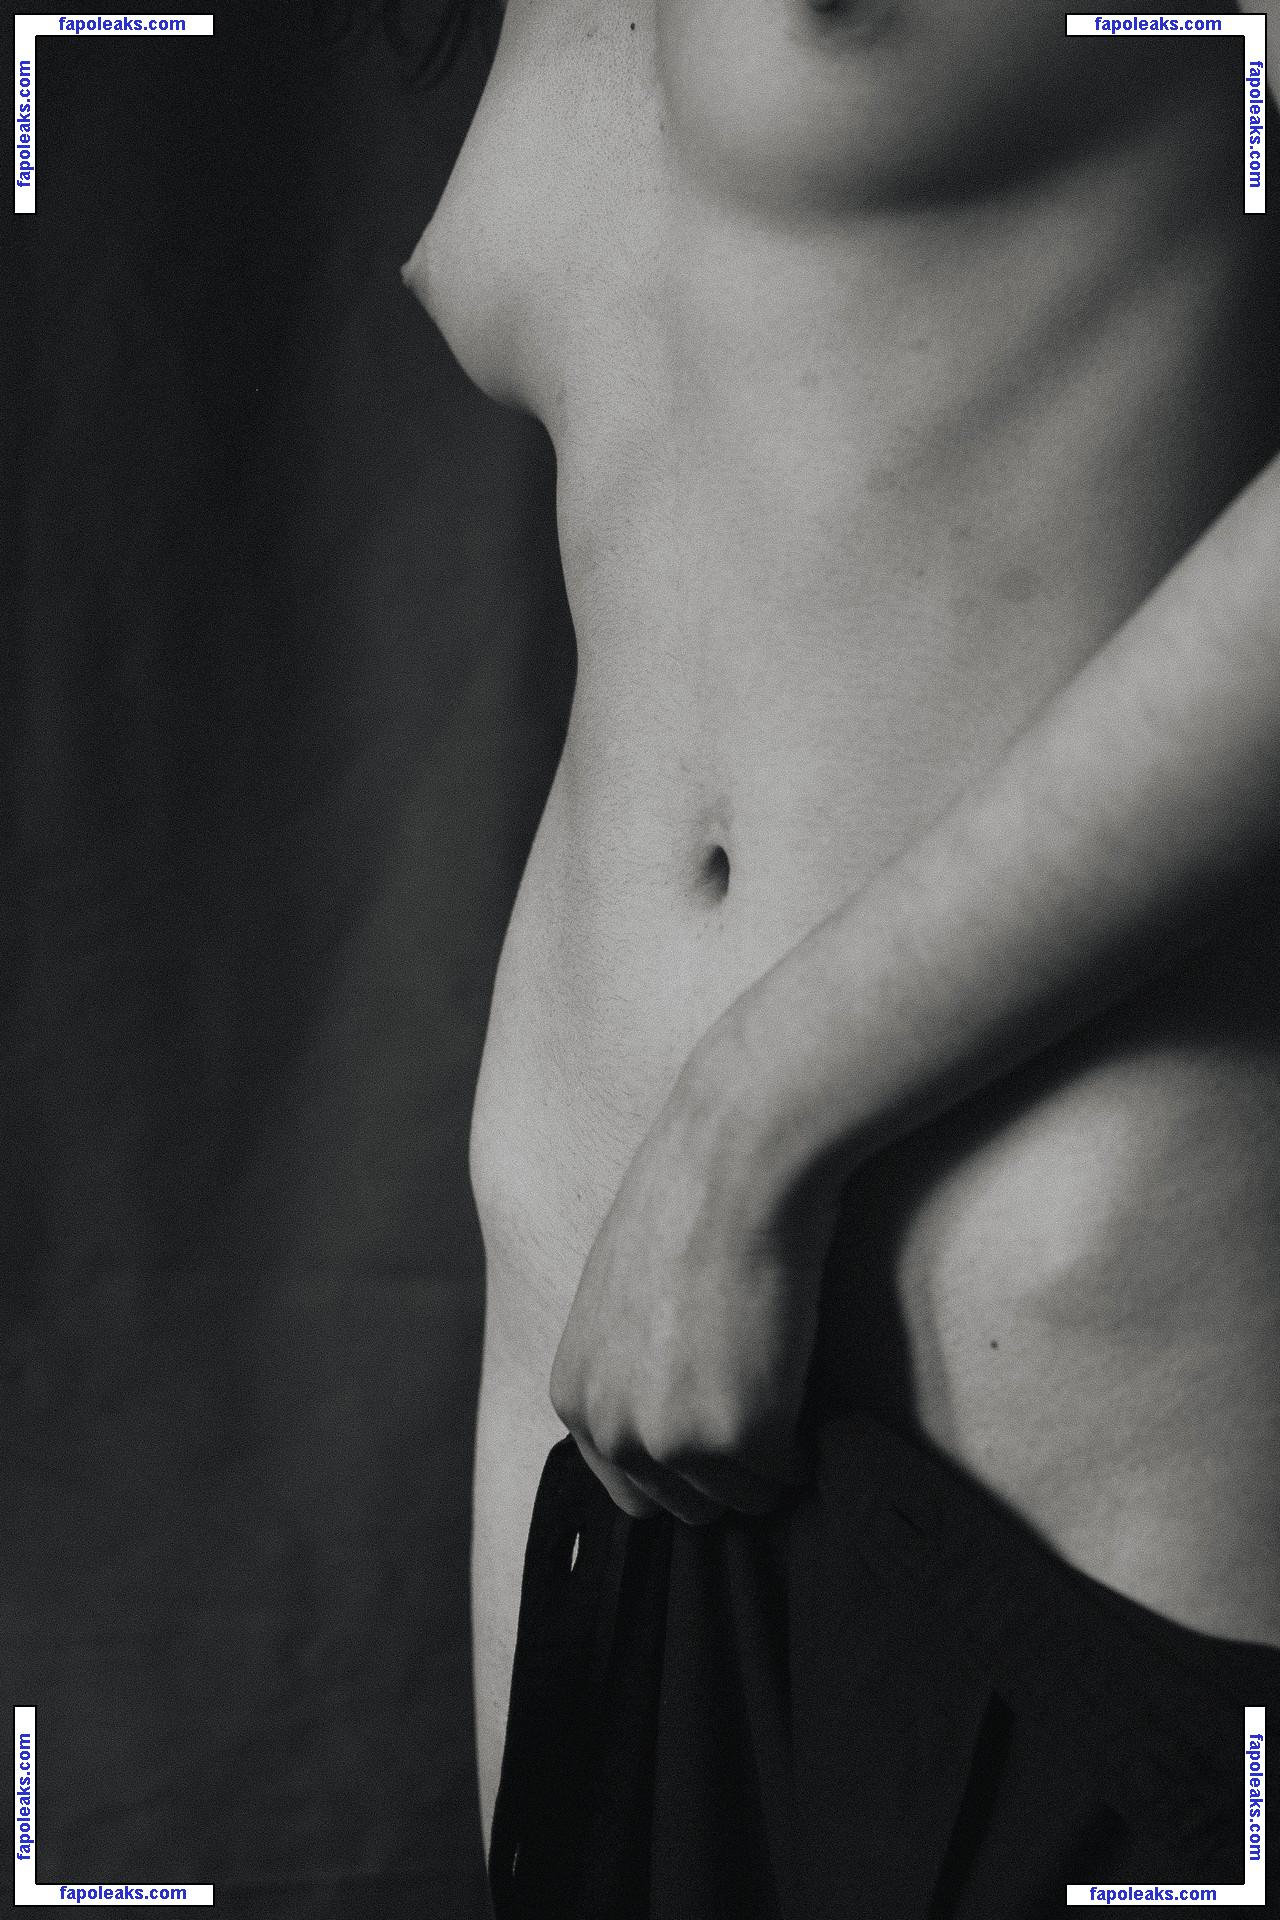 Valeria Shashenok / valeriahaver / valerisssh nude photo #0004 from OnlyFans